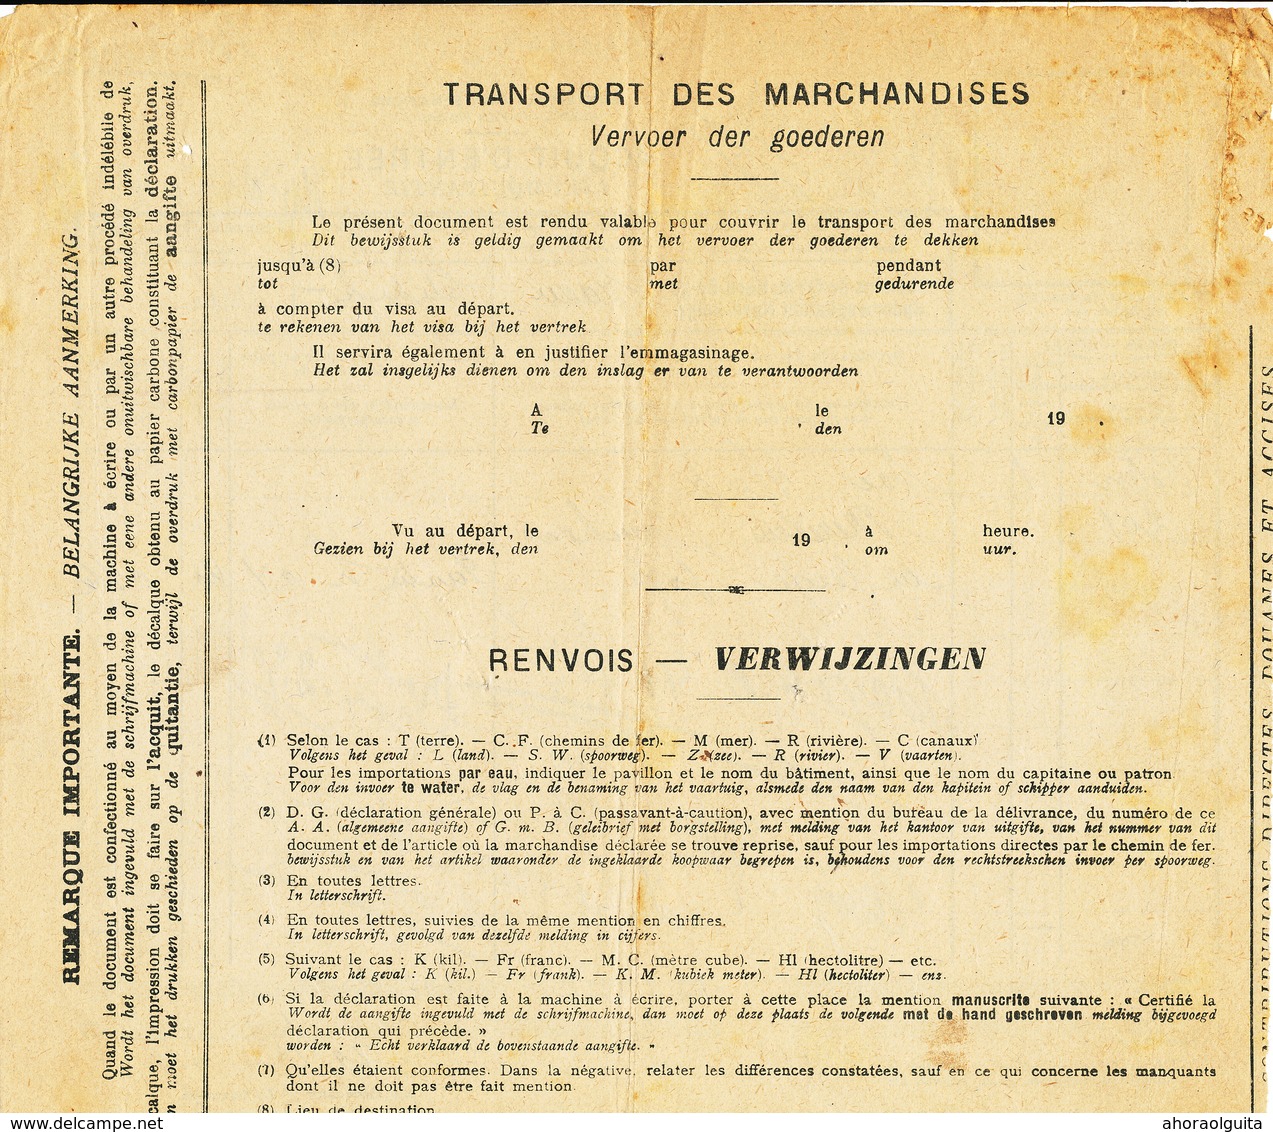 562/28 - Document Acquit D' Entrée ERQUELINNES NORD BELGE 1919 - 1 Colis De Bouchons En Liège Ex Bordeaux - Nord Belge